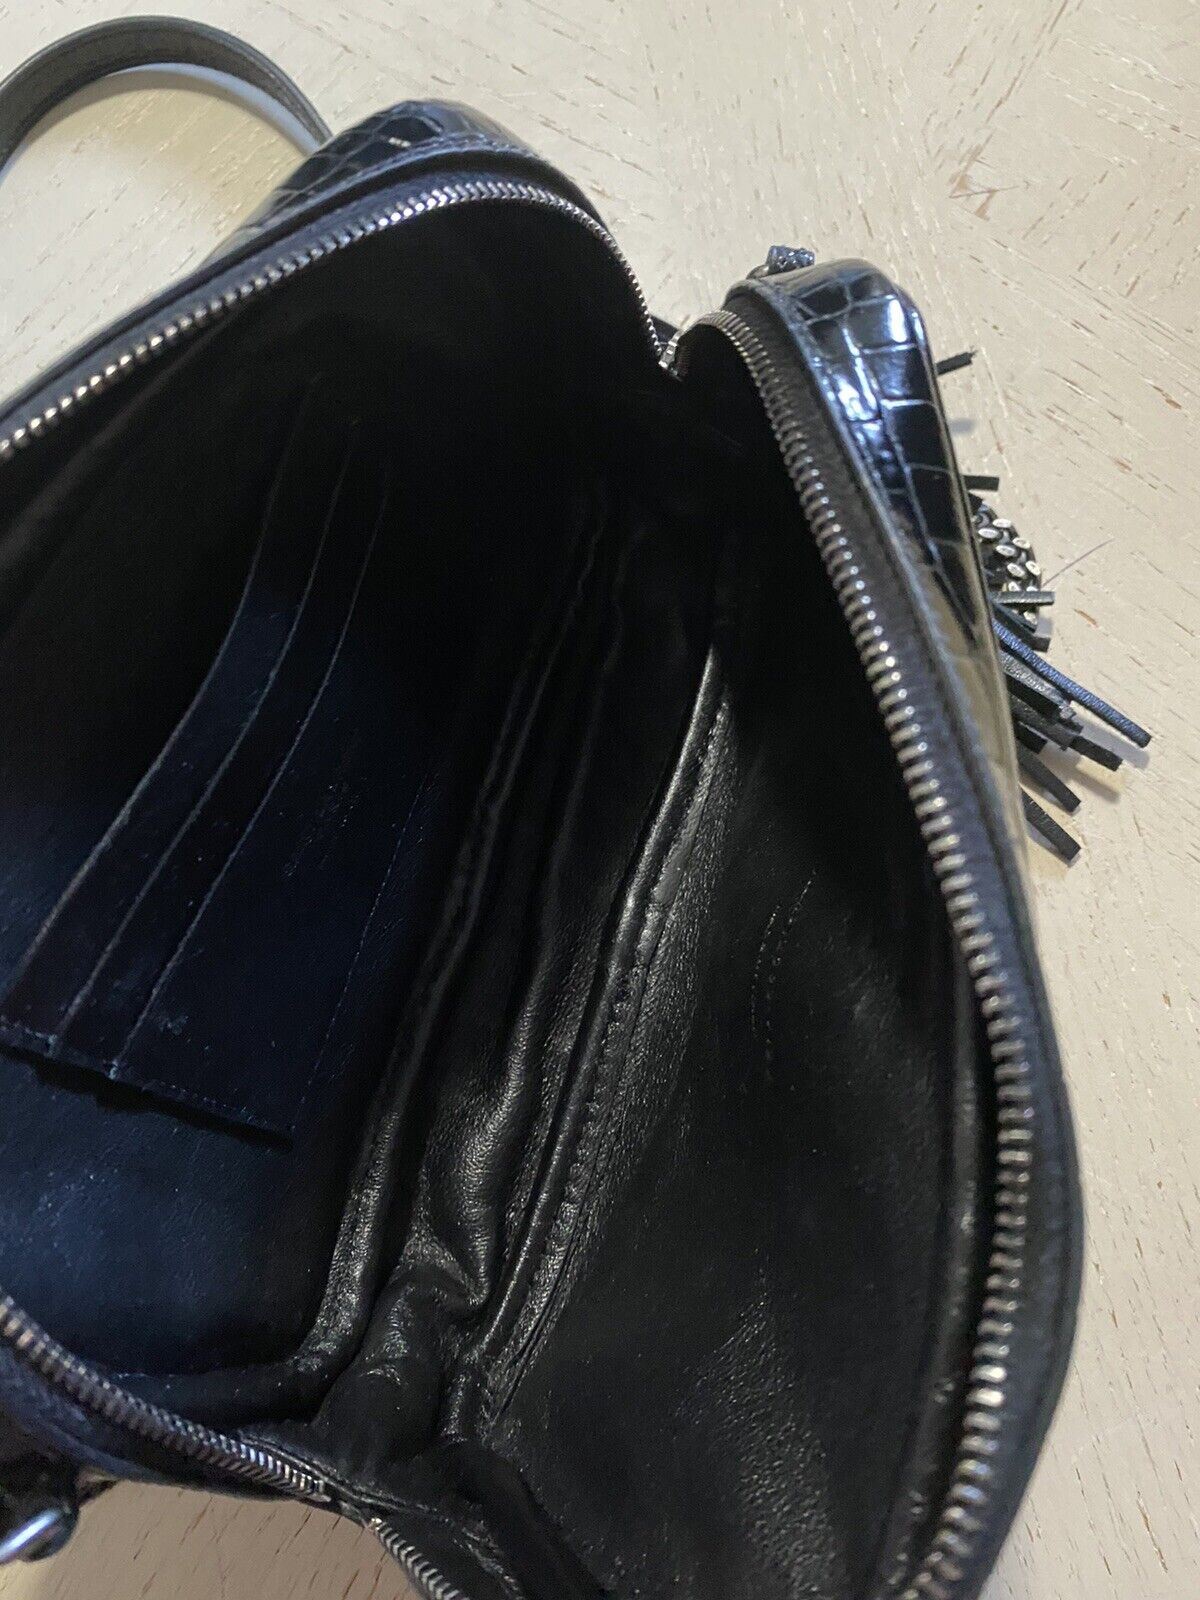 Новая кожаная сумка через плечо Saint Laurent YSL MiniI за 2150 долларов, черная 612563